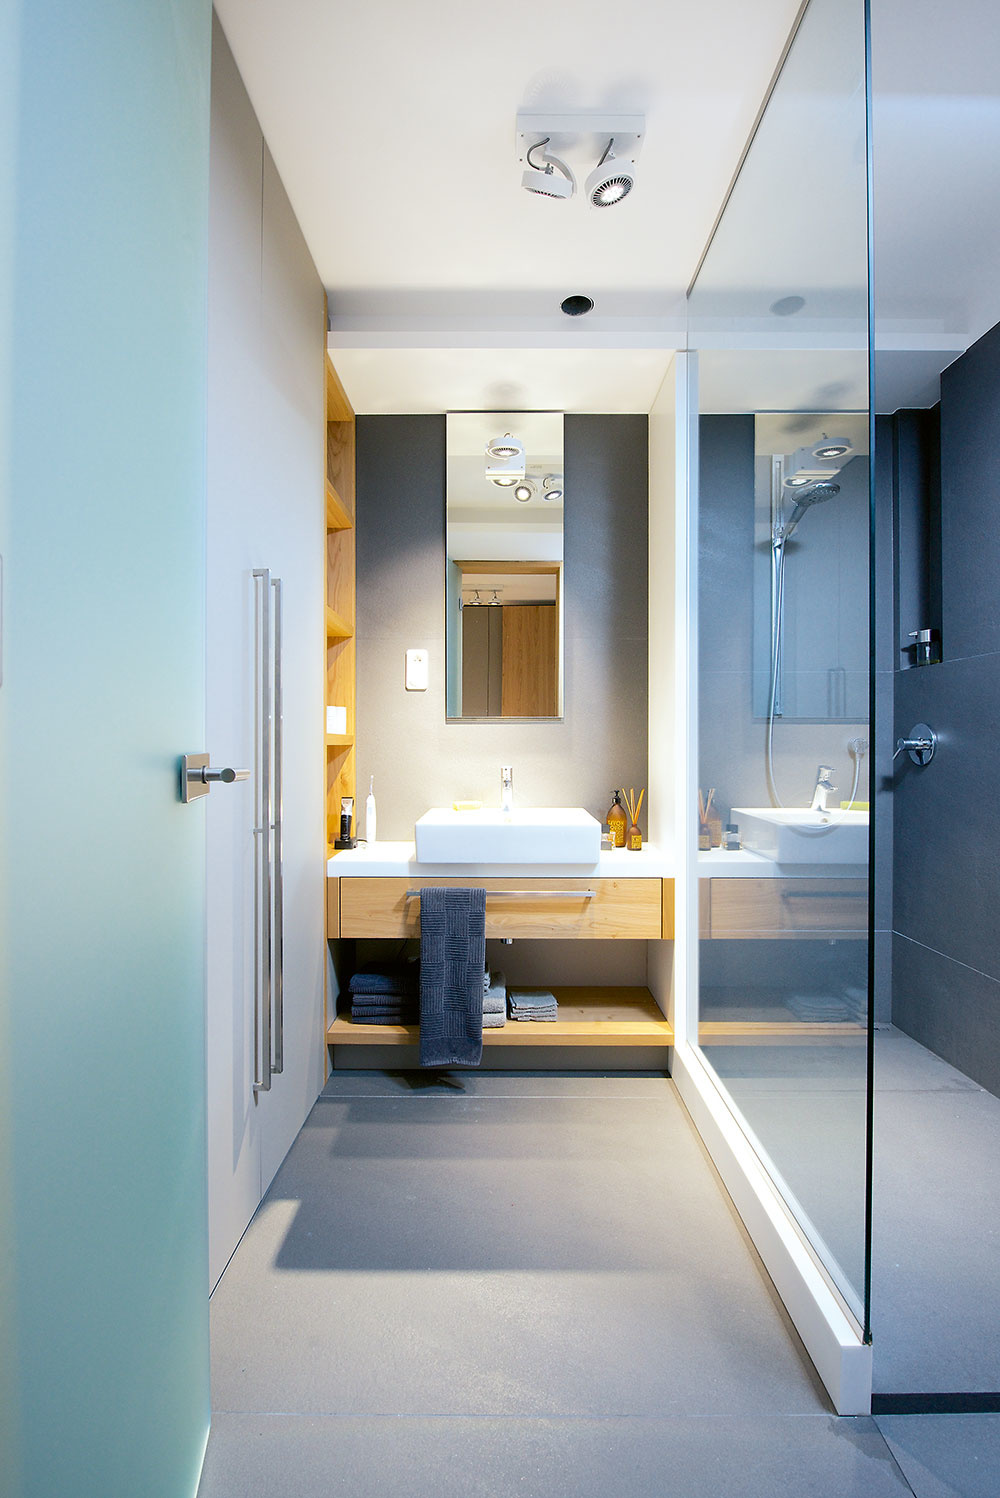 V kúpeľni sa farebné ladenie nemení – kombinácia sivej, dreva a bielej keramiky je elegantná a navodzuje pokojnú atmosféru. Aj tu sú funkčnosť a precíznosť detailov dovedené k dokonalosti.